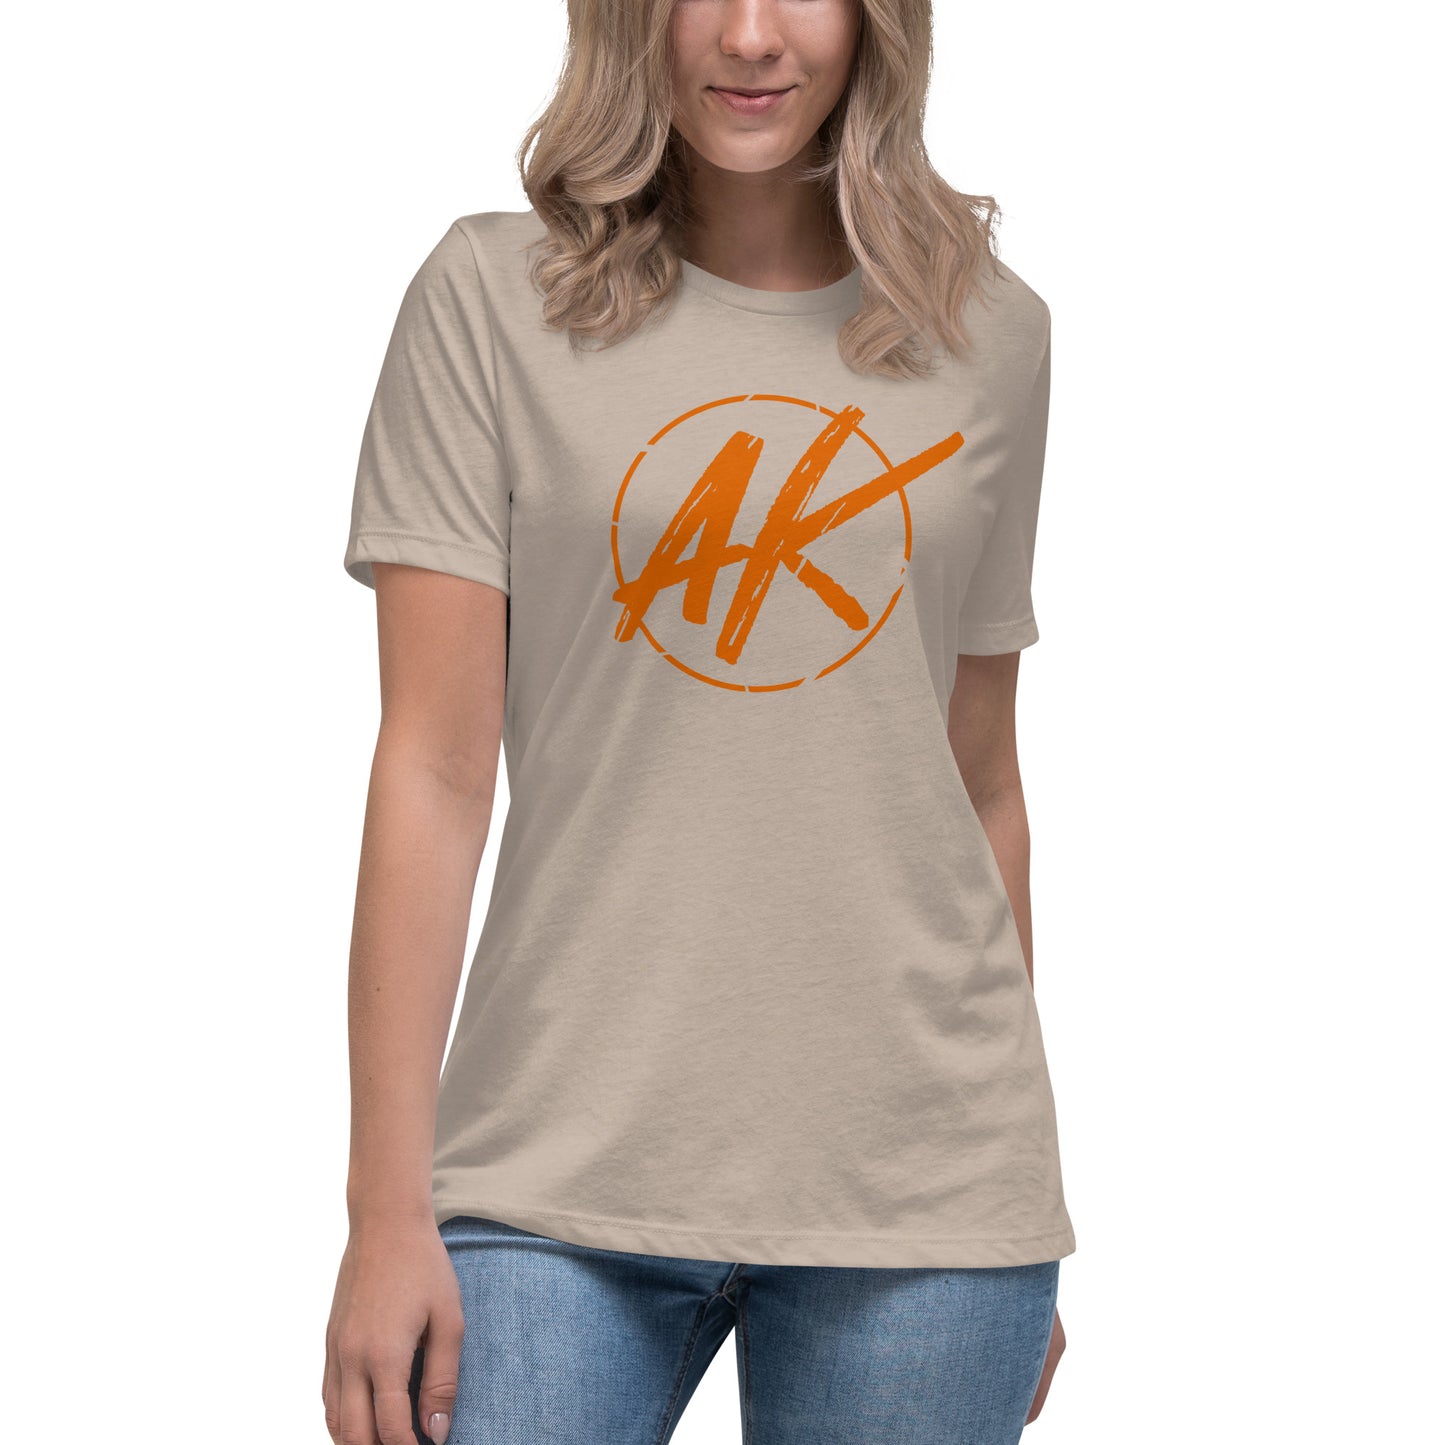 W| AK (orange)